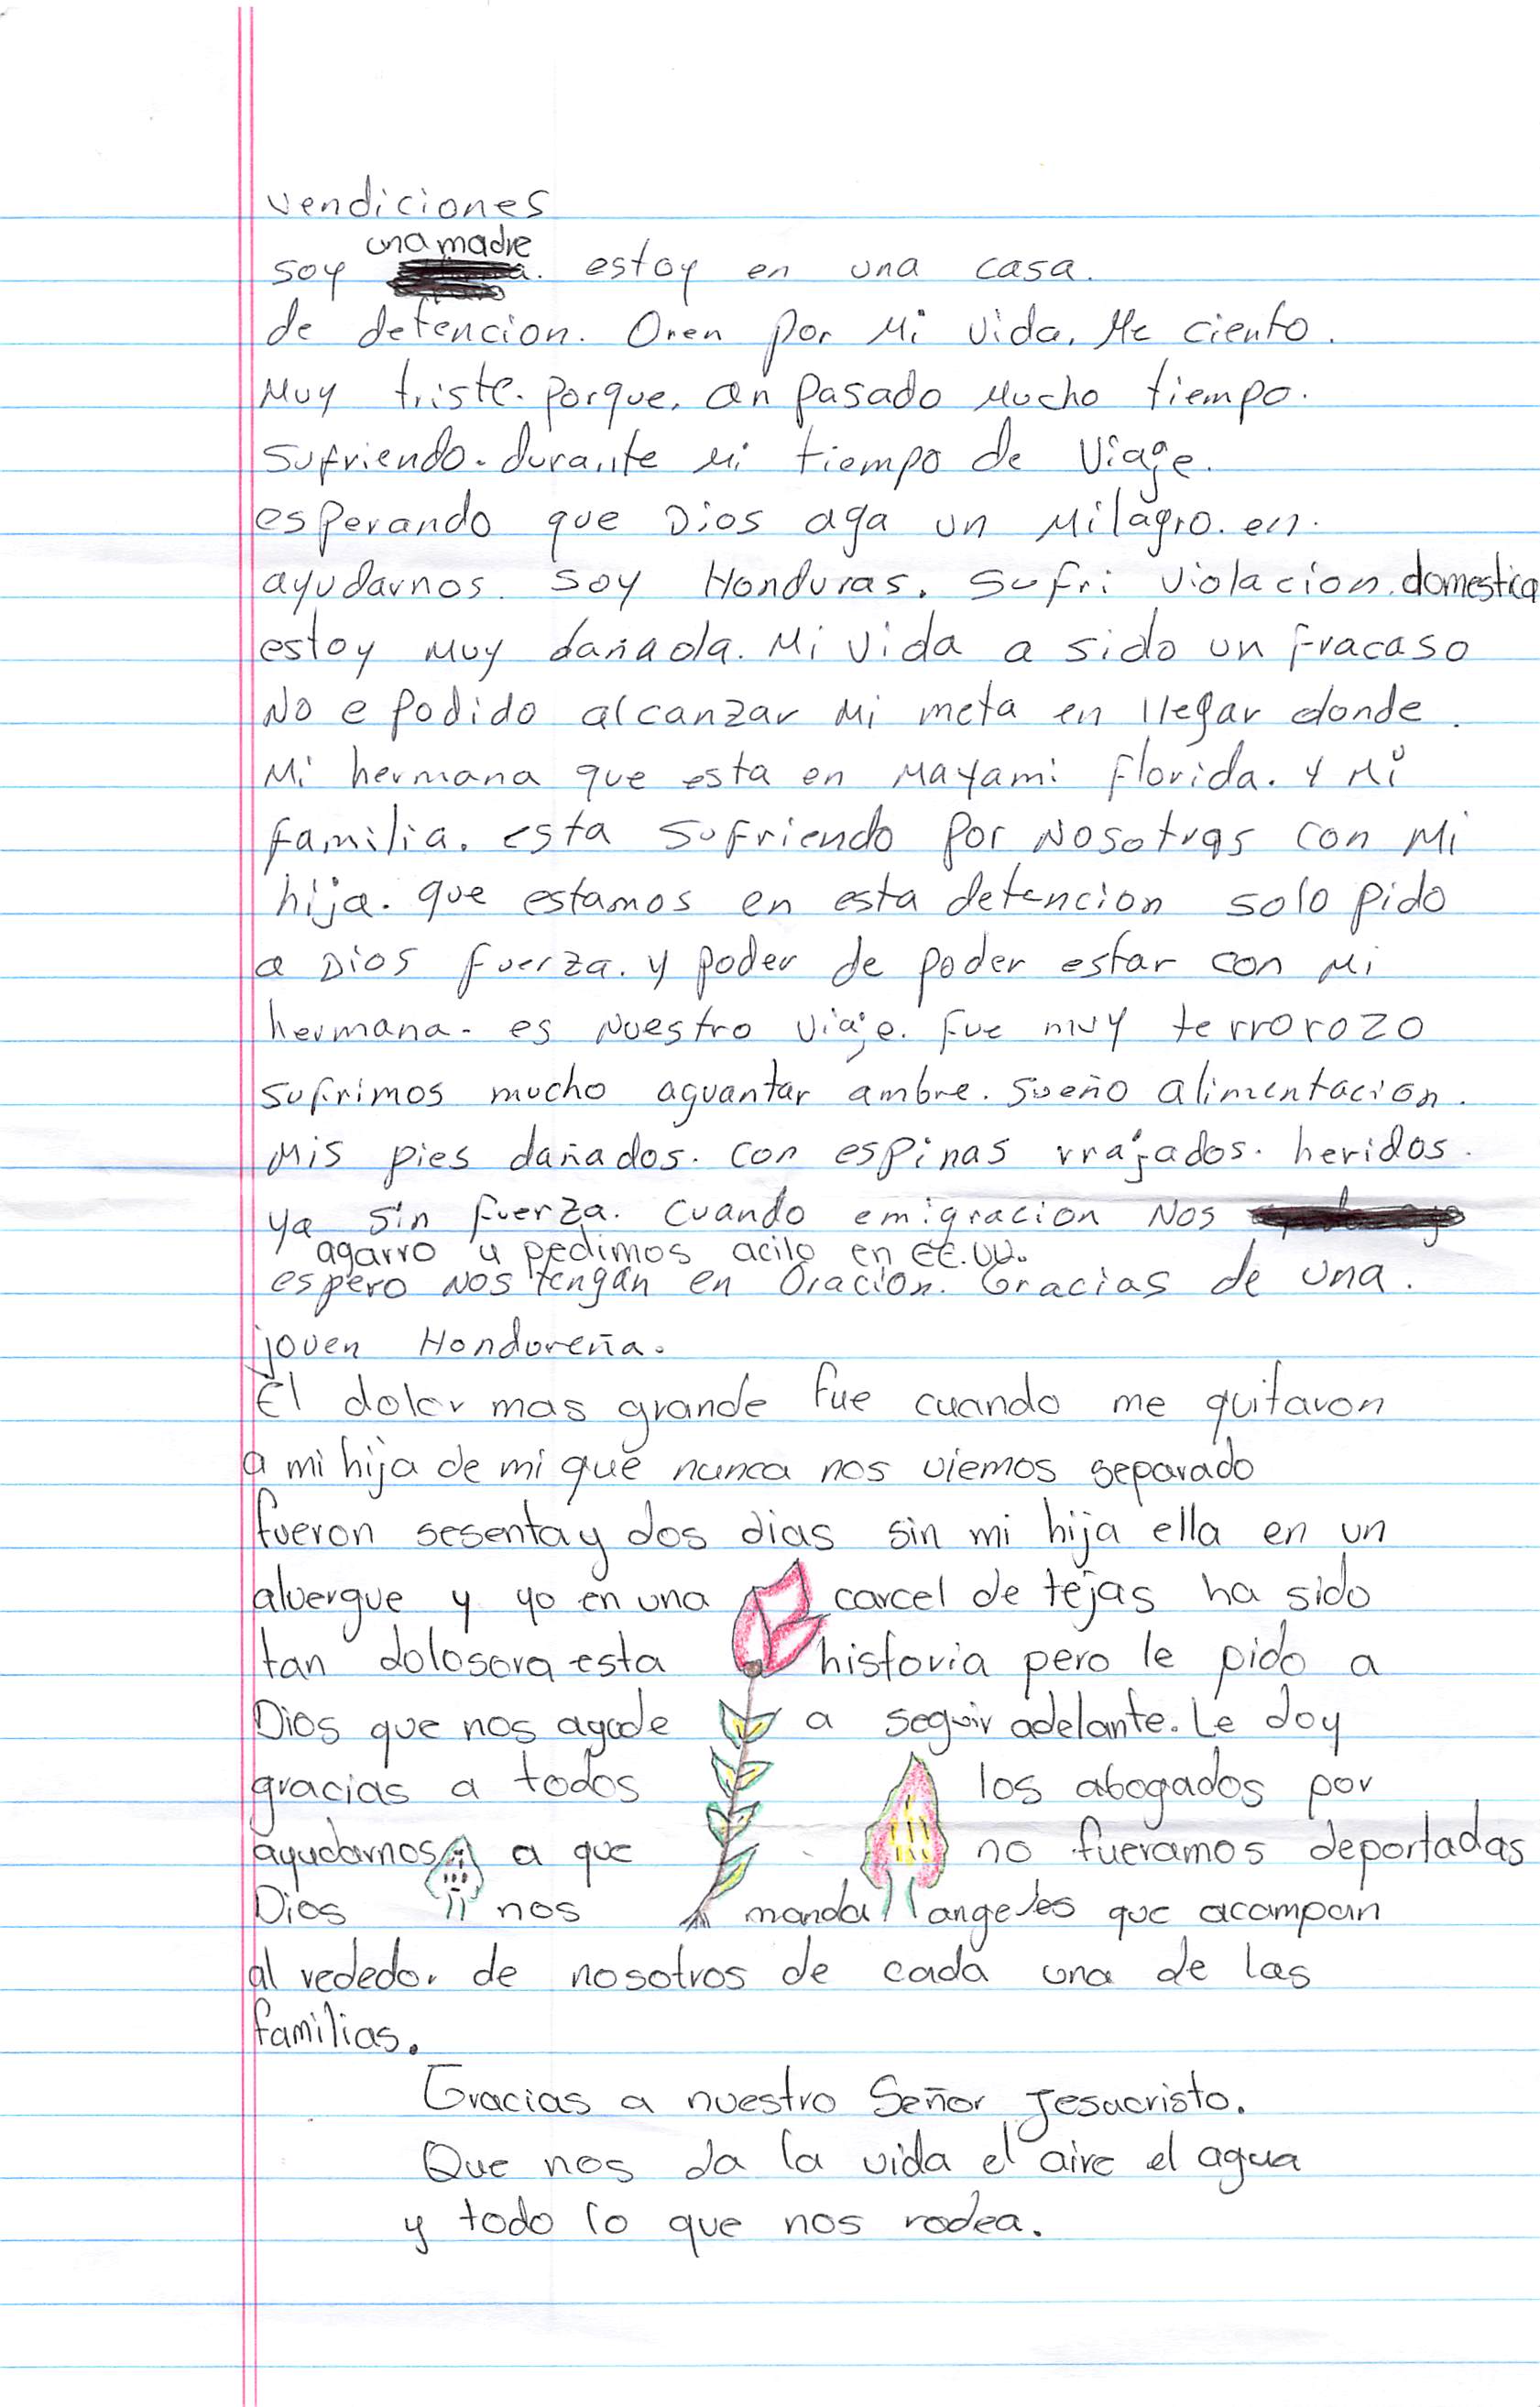 Valeria's Handwritten Letter